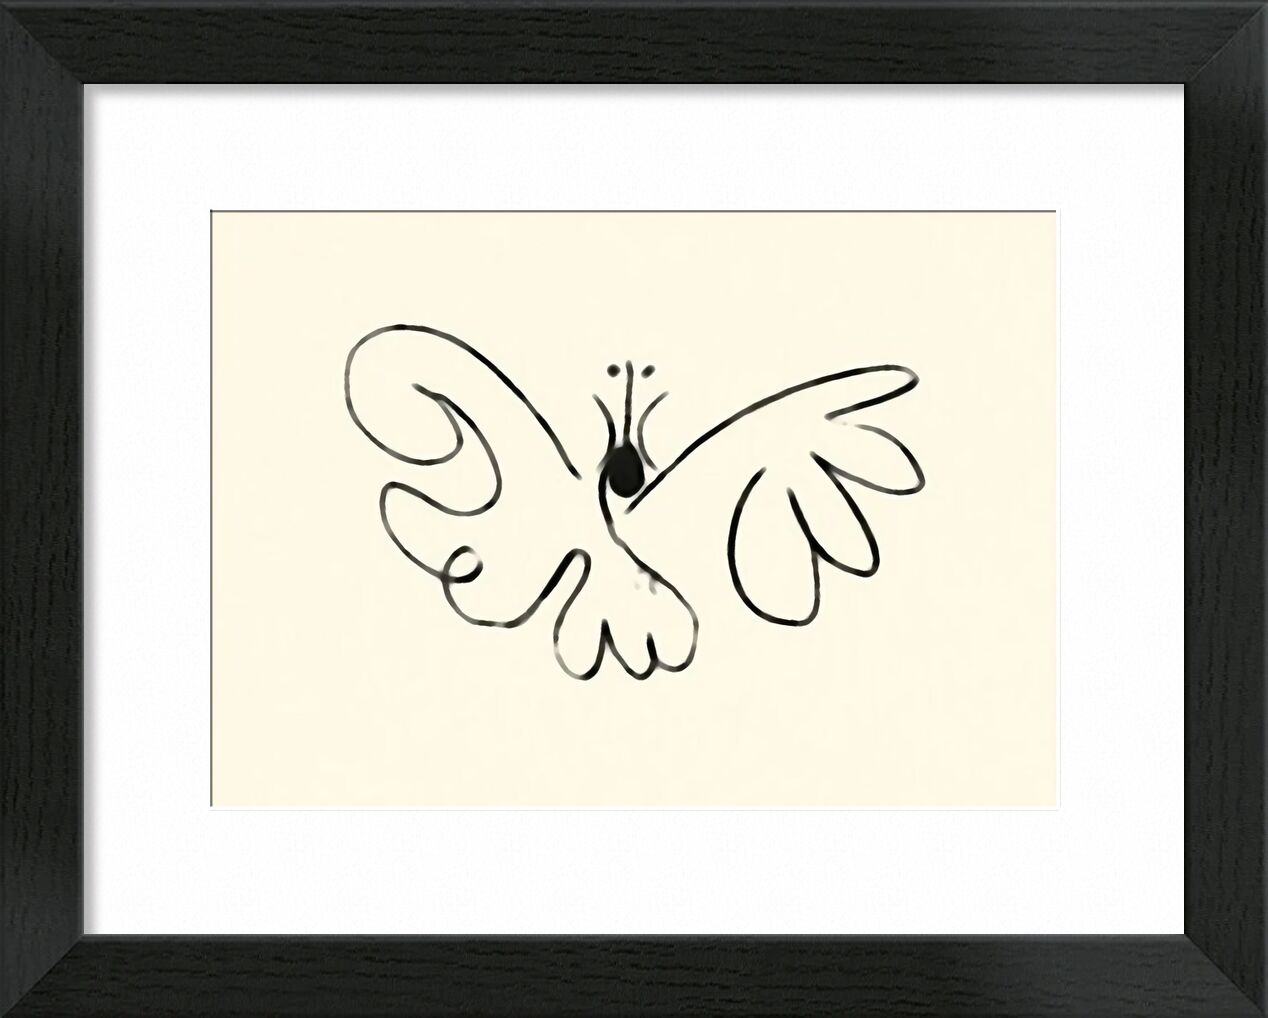 The Butterfly - Picasso von Bildende Kunst, Prodi Art, Schmetterling, Picasso, Zeichnung, Züge